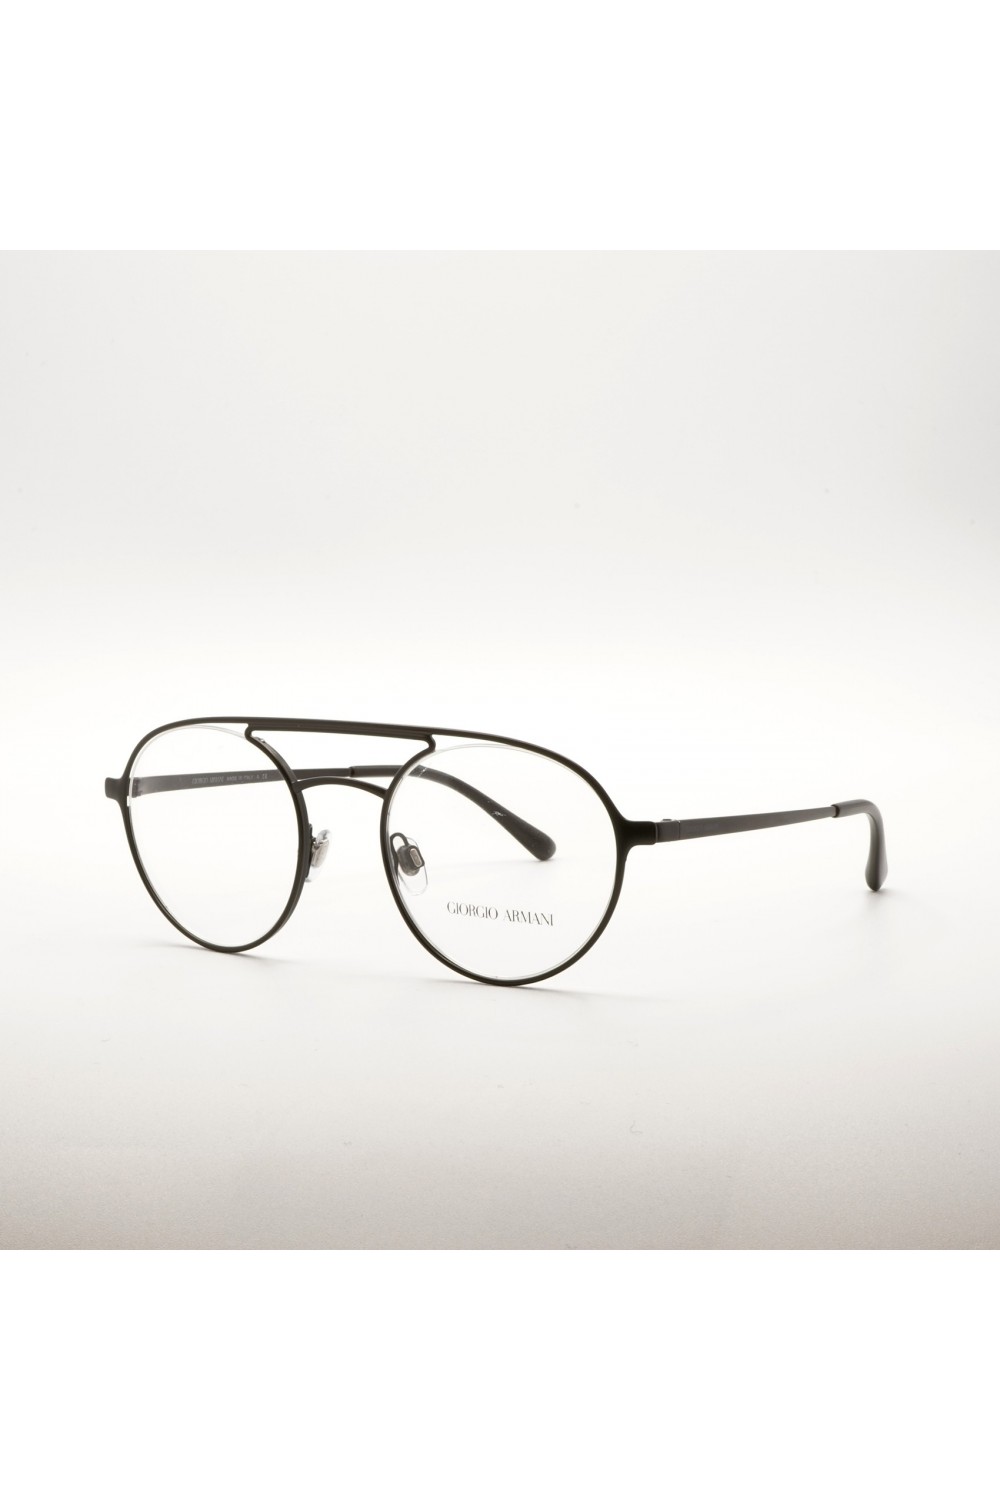 Giorgio Armani - Occhiali da vista in metallo tondi unisex nero satinato -